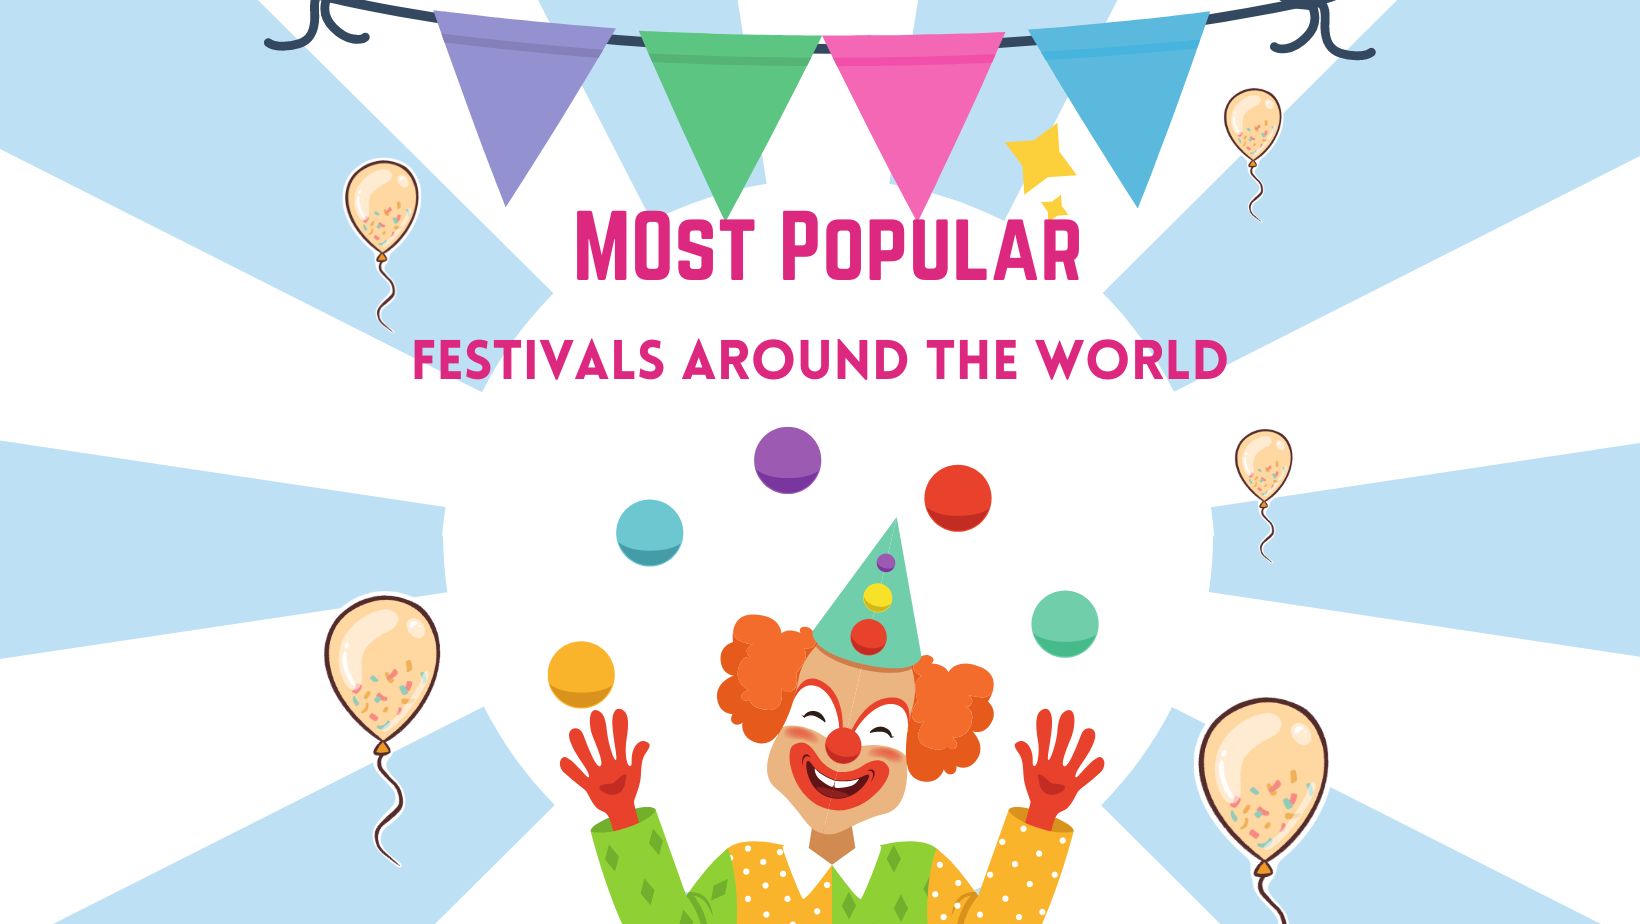 Most Popular Festivals Around the World